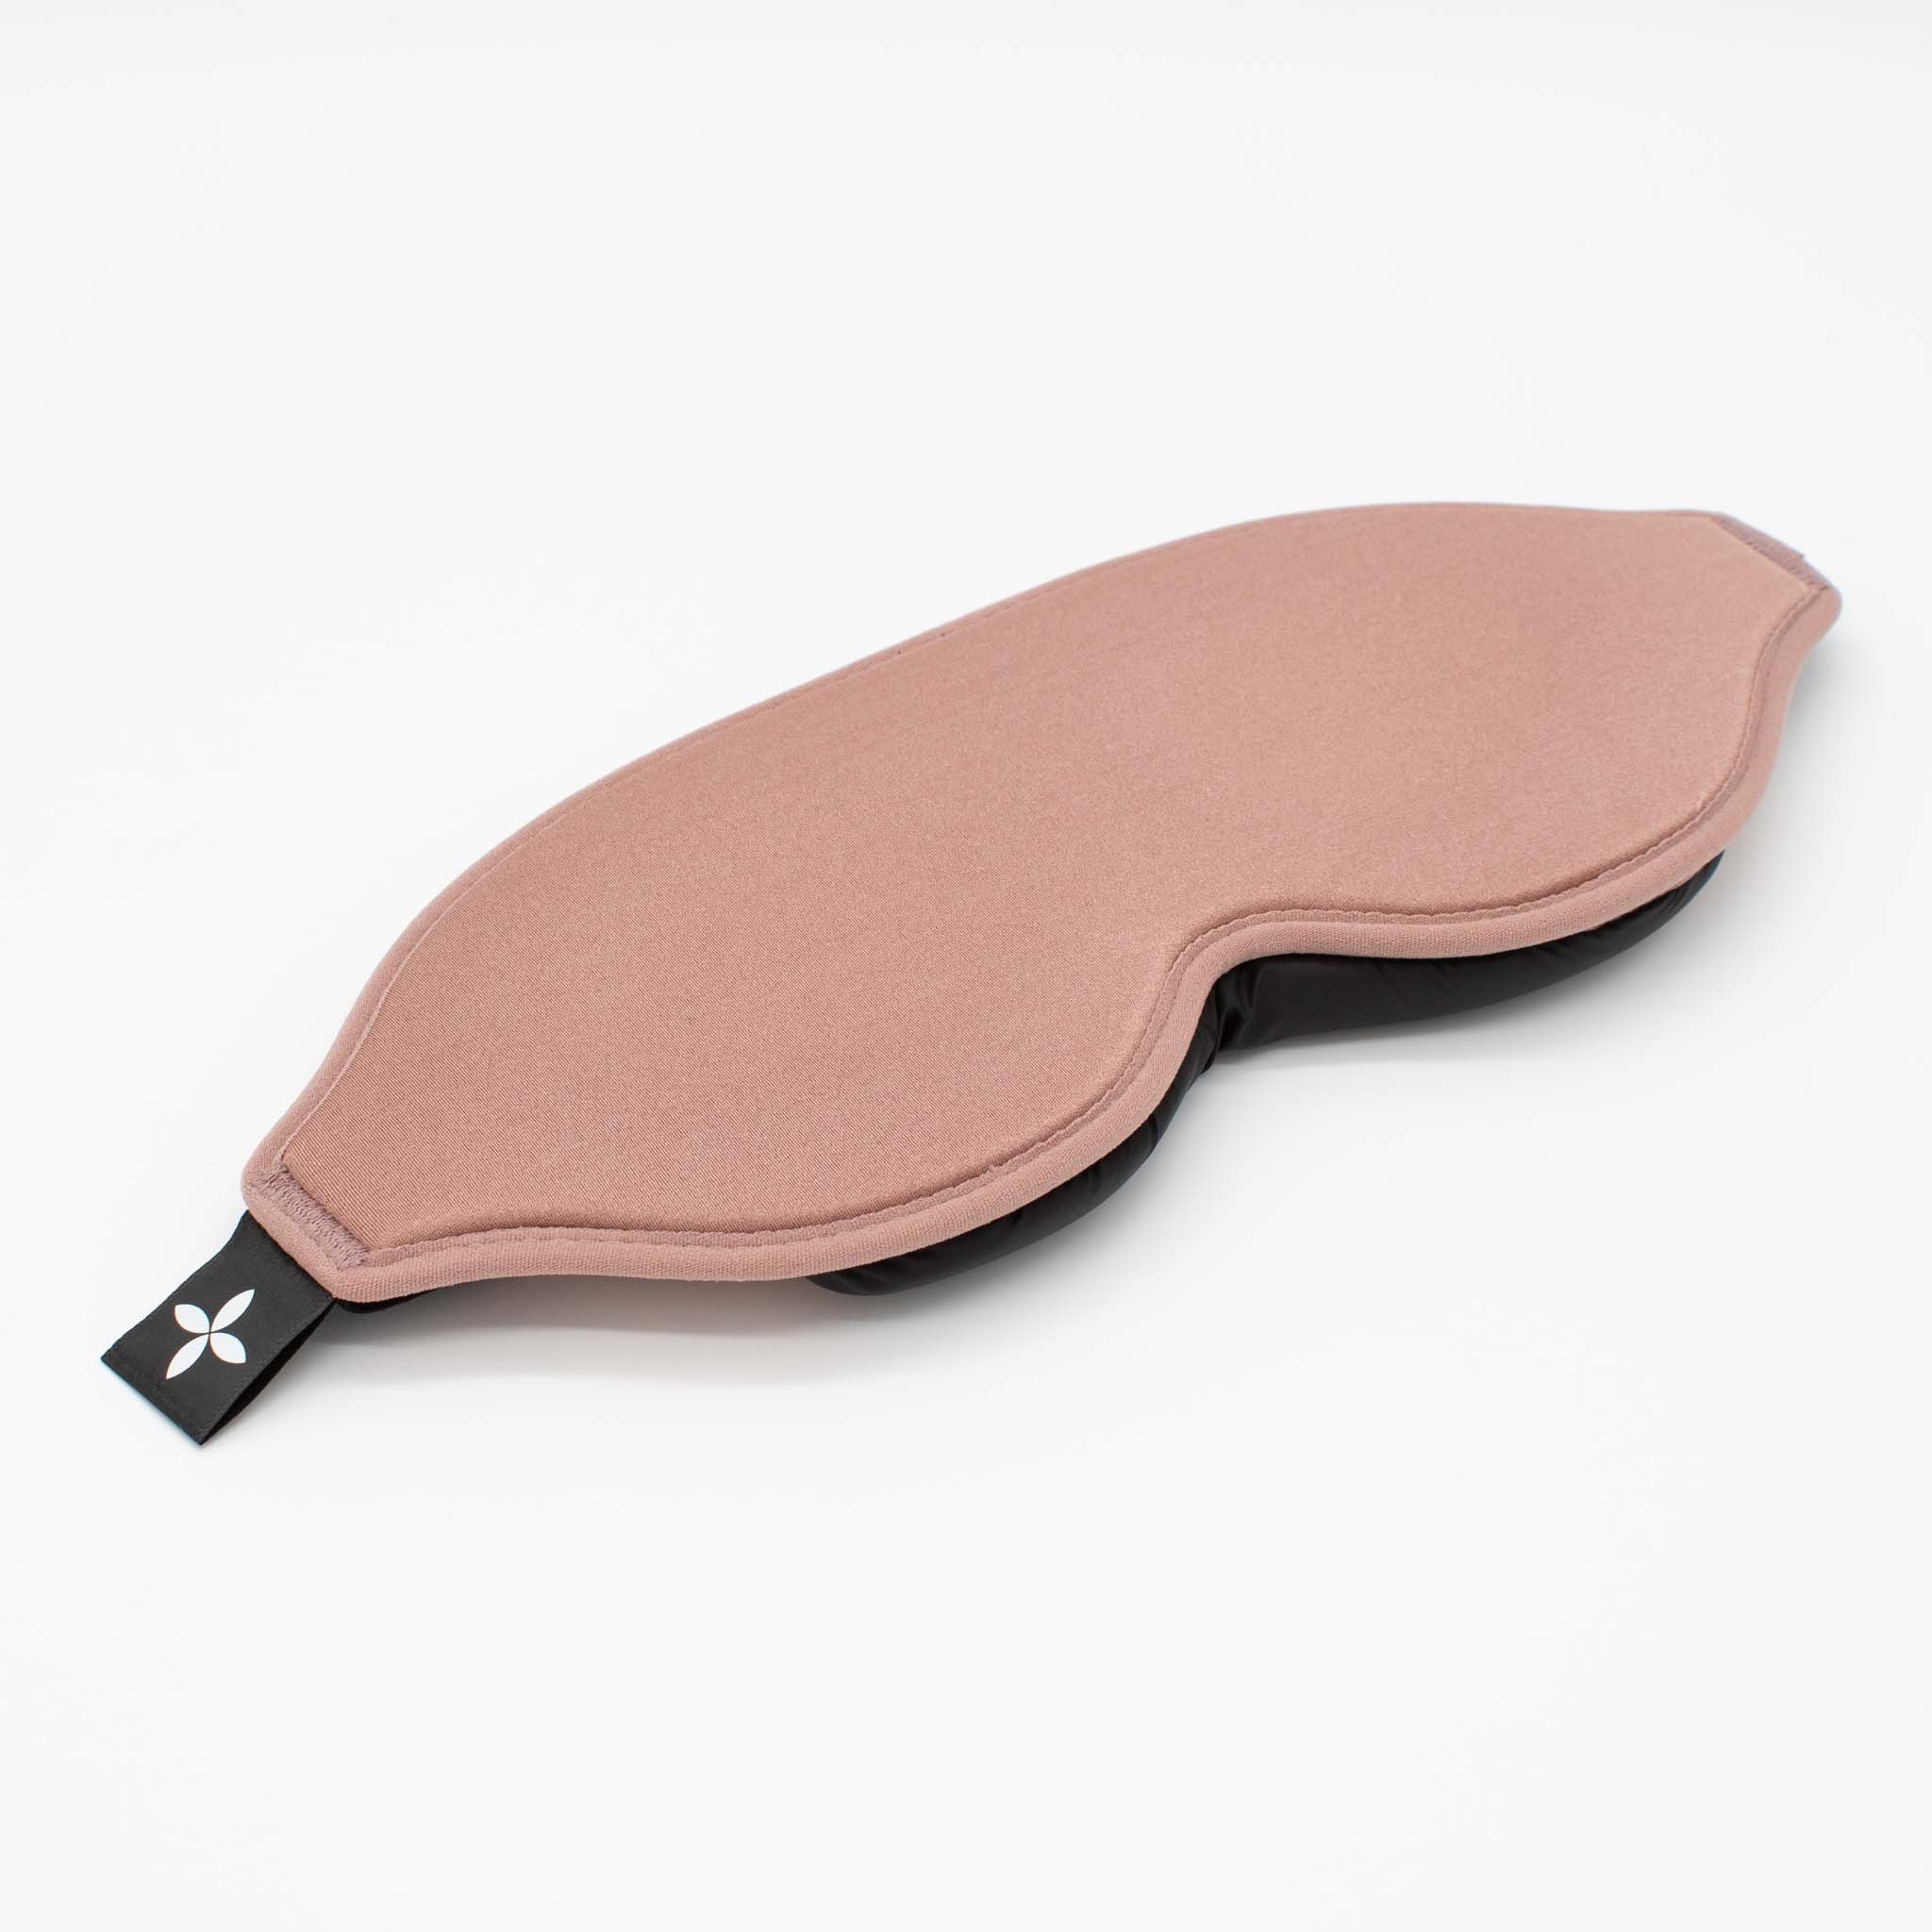 shapevital.de Schlafmaske Schlafmaske Deluxe mit angenehmer Augenpolsterung rosé, individuell verstellbar und lichtdicht